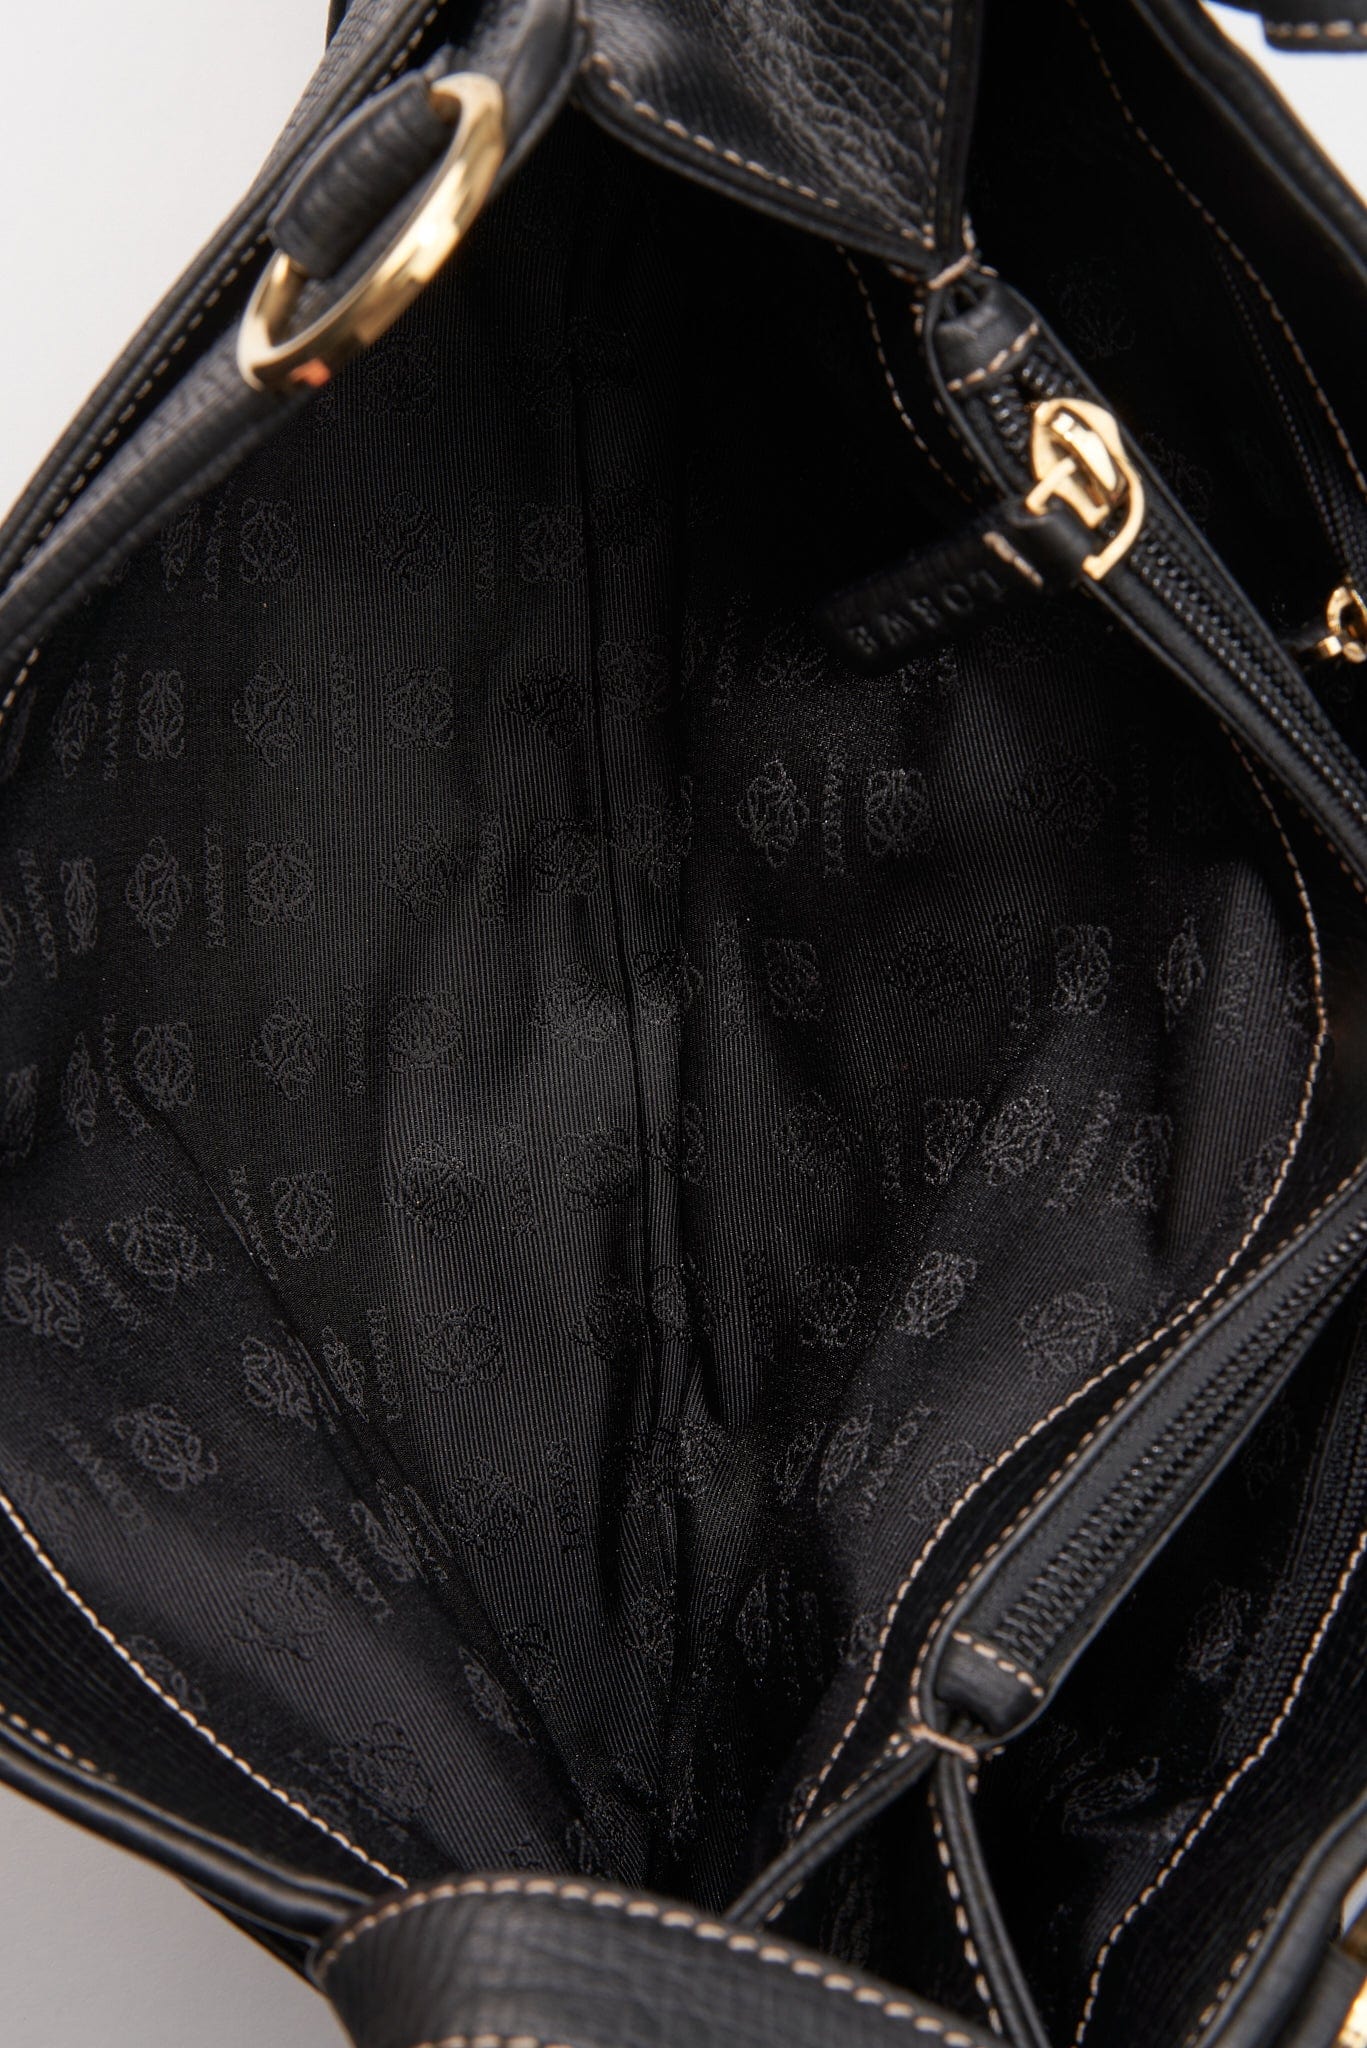 Vintage Loewe Textured Leather Shoulder Bag